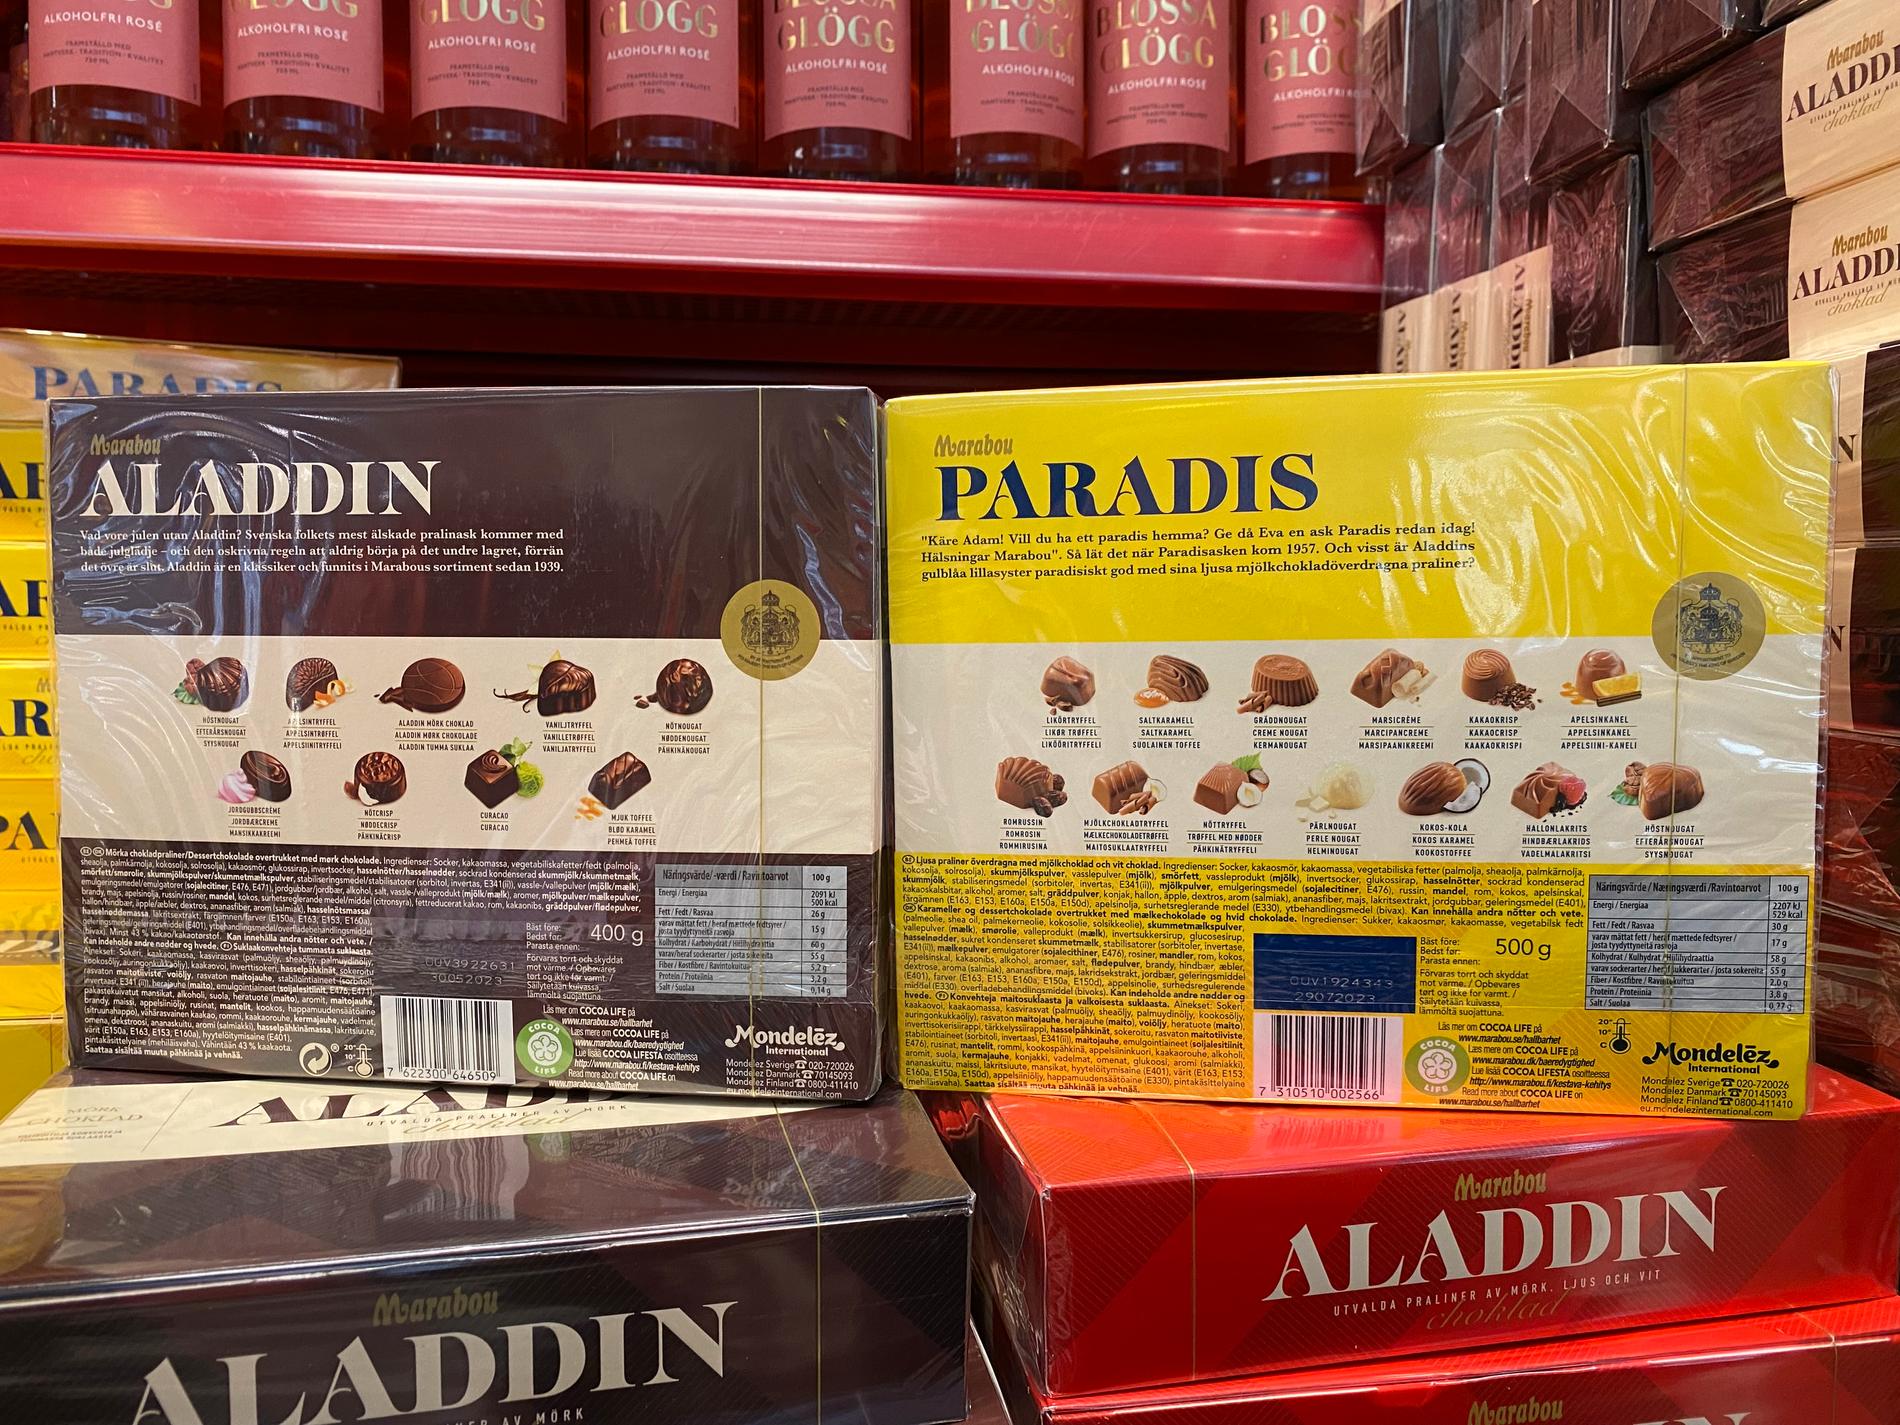 Pralinaskarnas vikt syns tydligt. Aladdin med mörk choklad väger bara 400 gram medan Paradis med ljus choklad väger 500 gram.